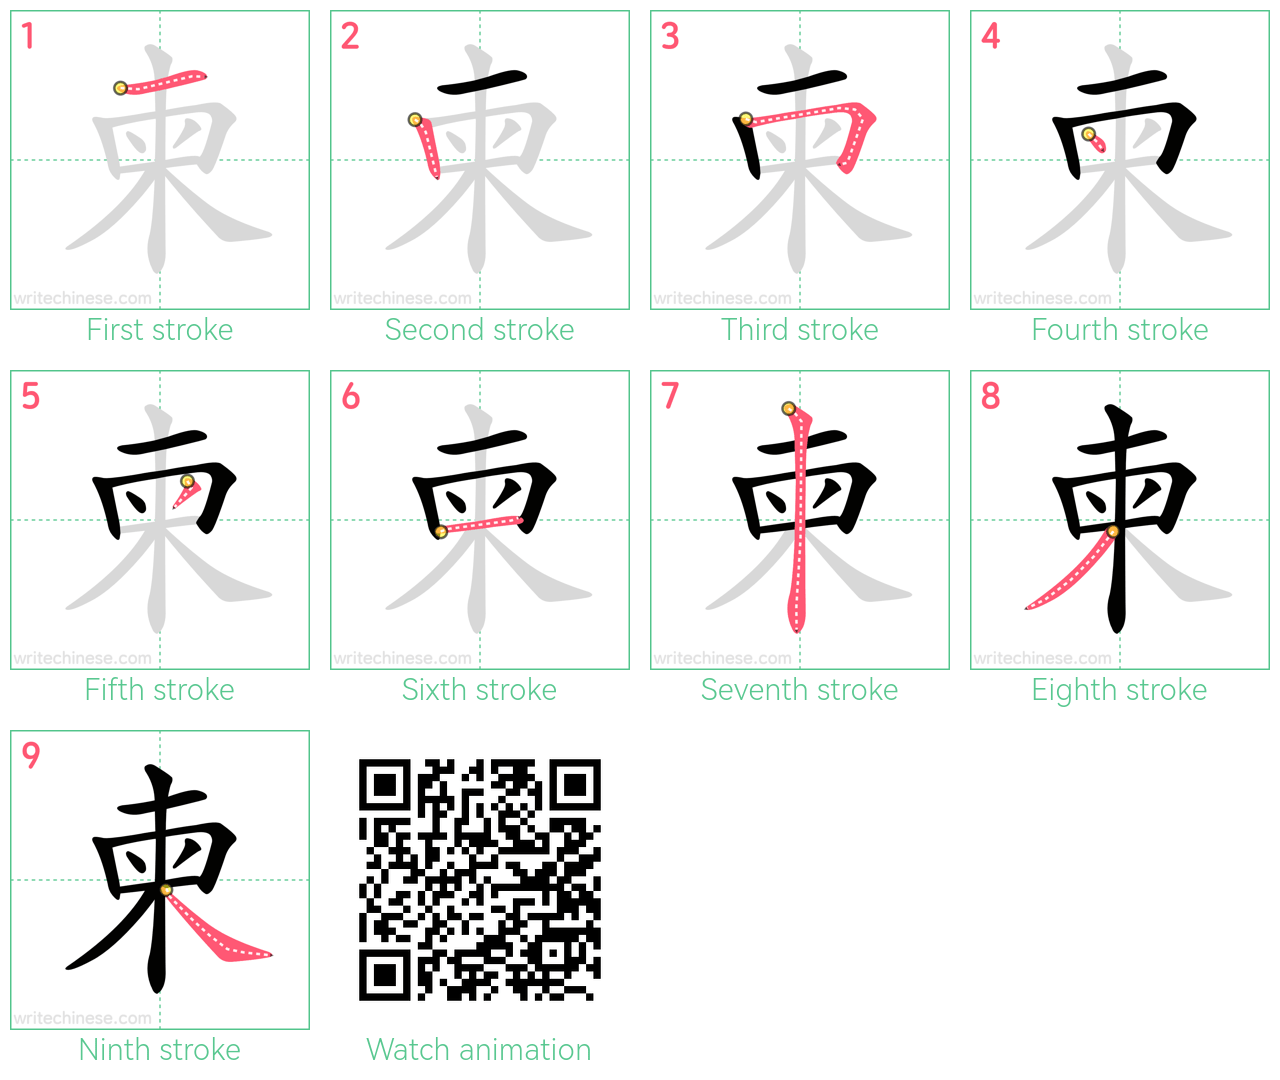 柬 step-by-step stroke order diagrams